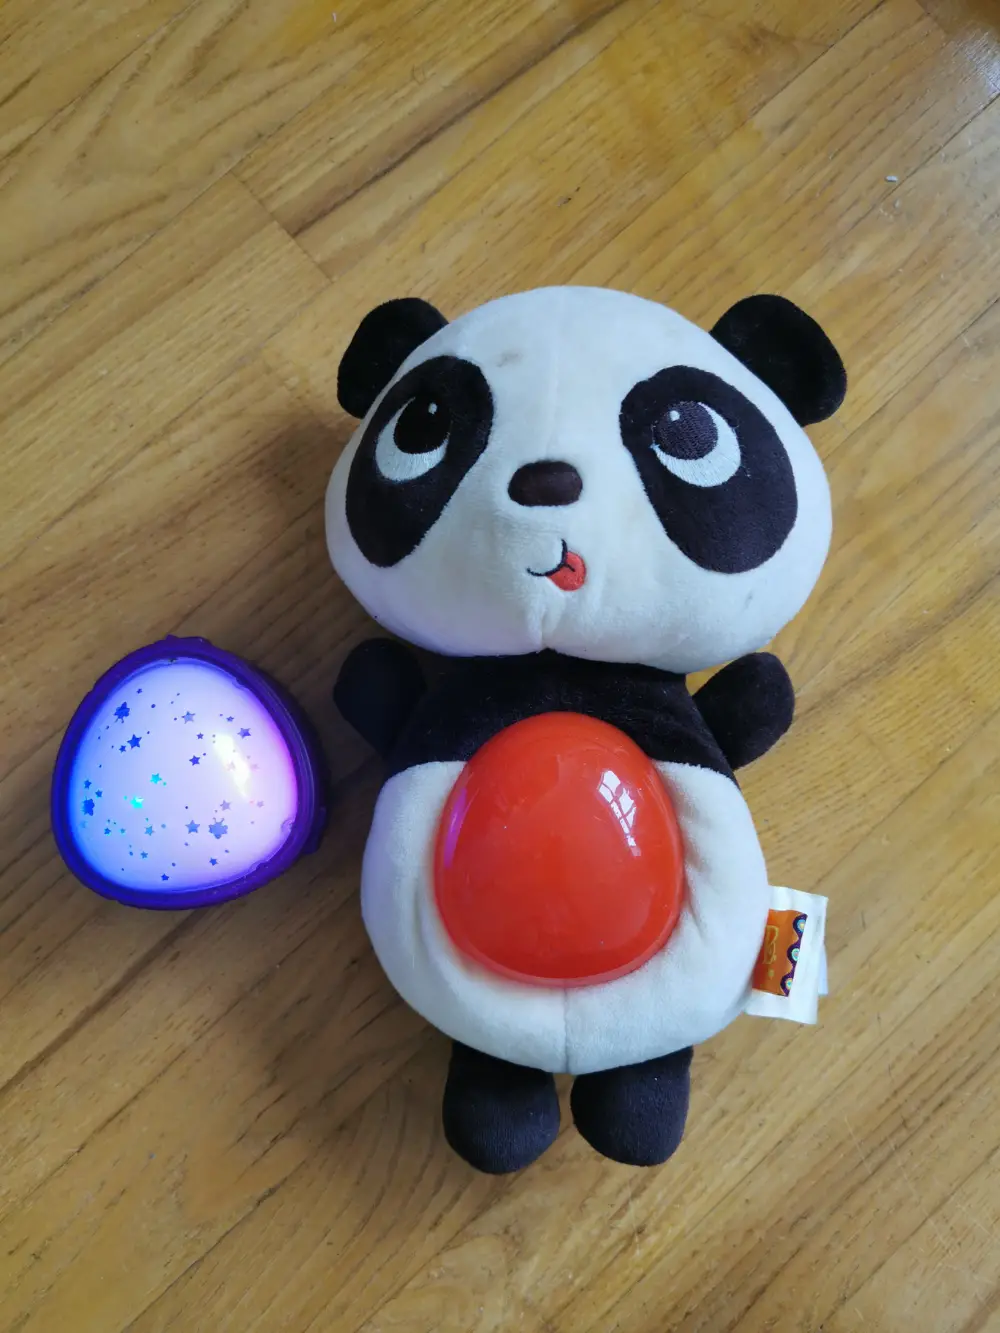 B toys Panda bamse med musik og lys